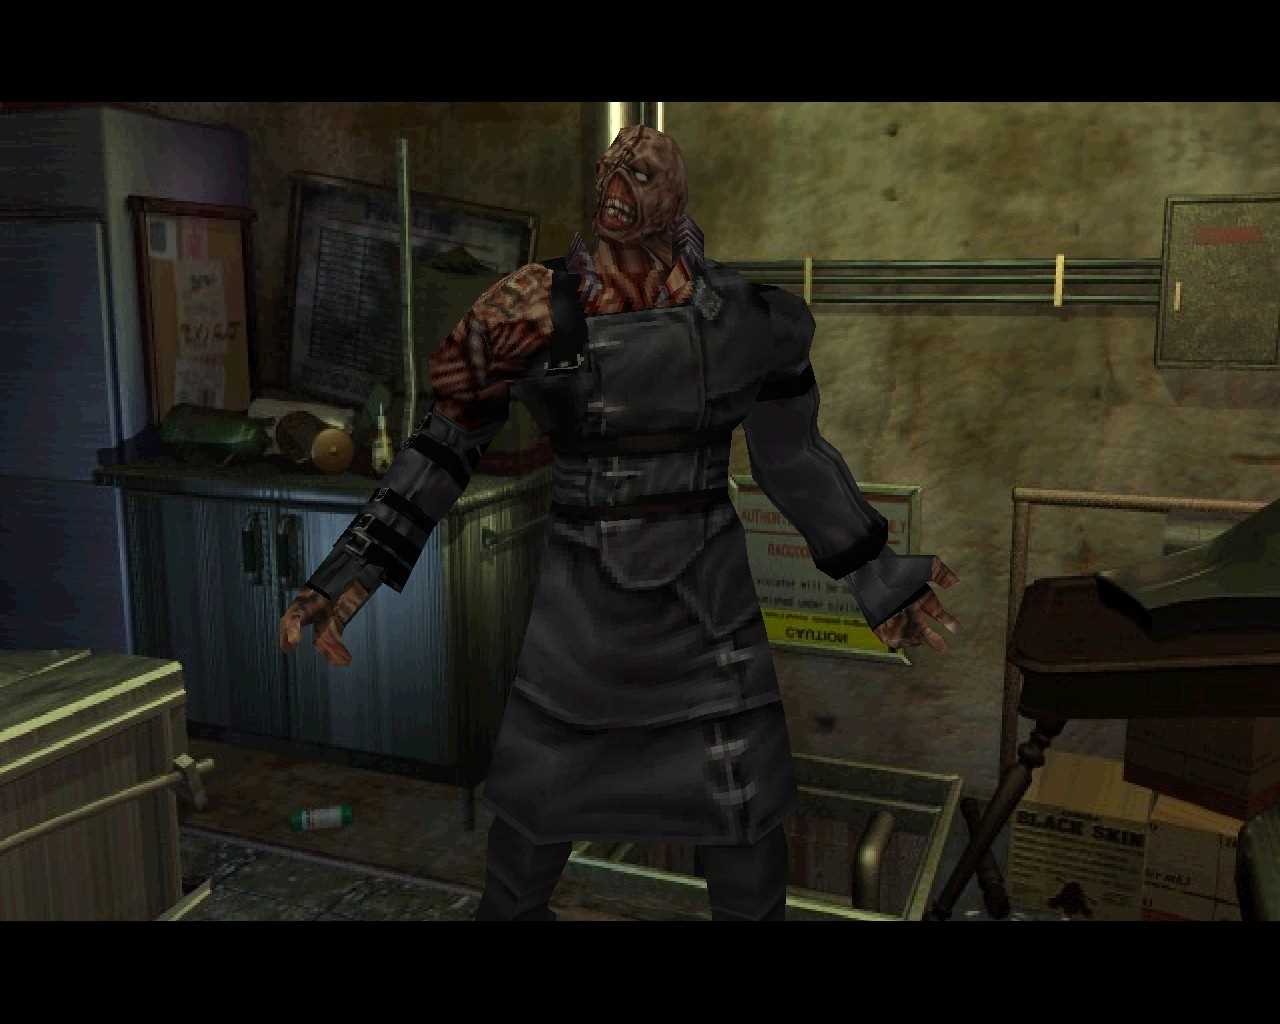 Resident evil 3 механики. Обитель зла 3 Немезис ремейк. Немезида резидент ивел.